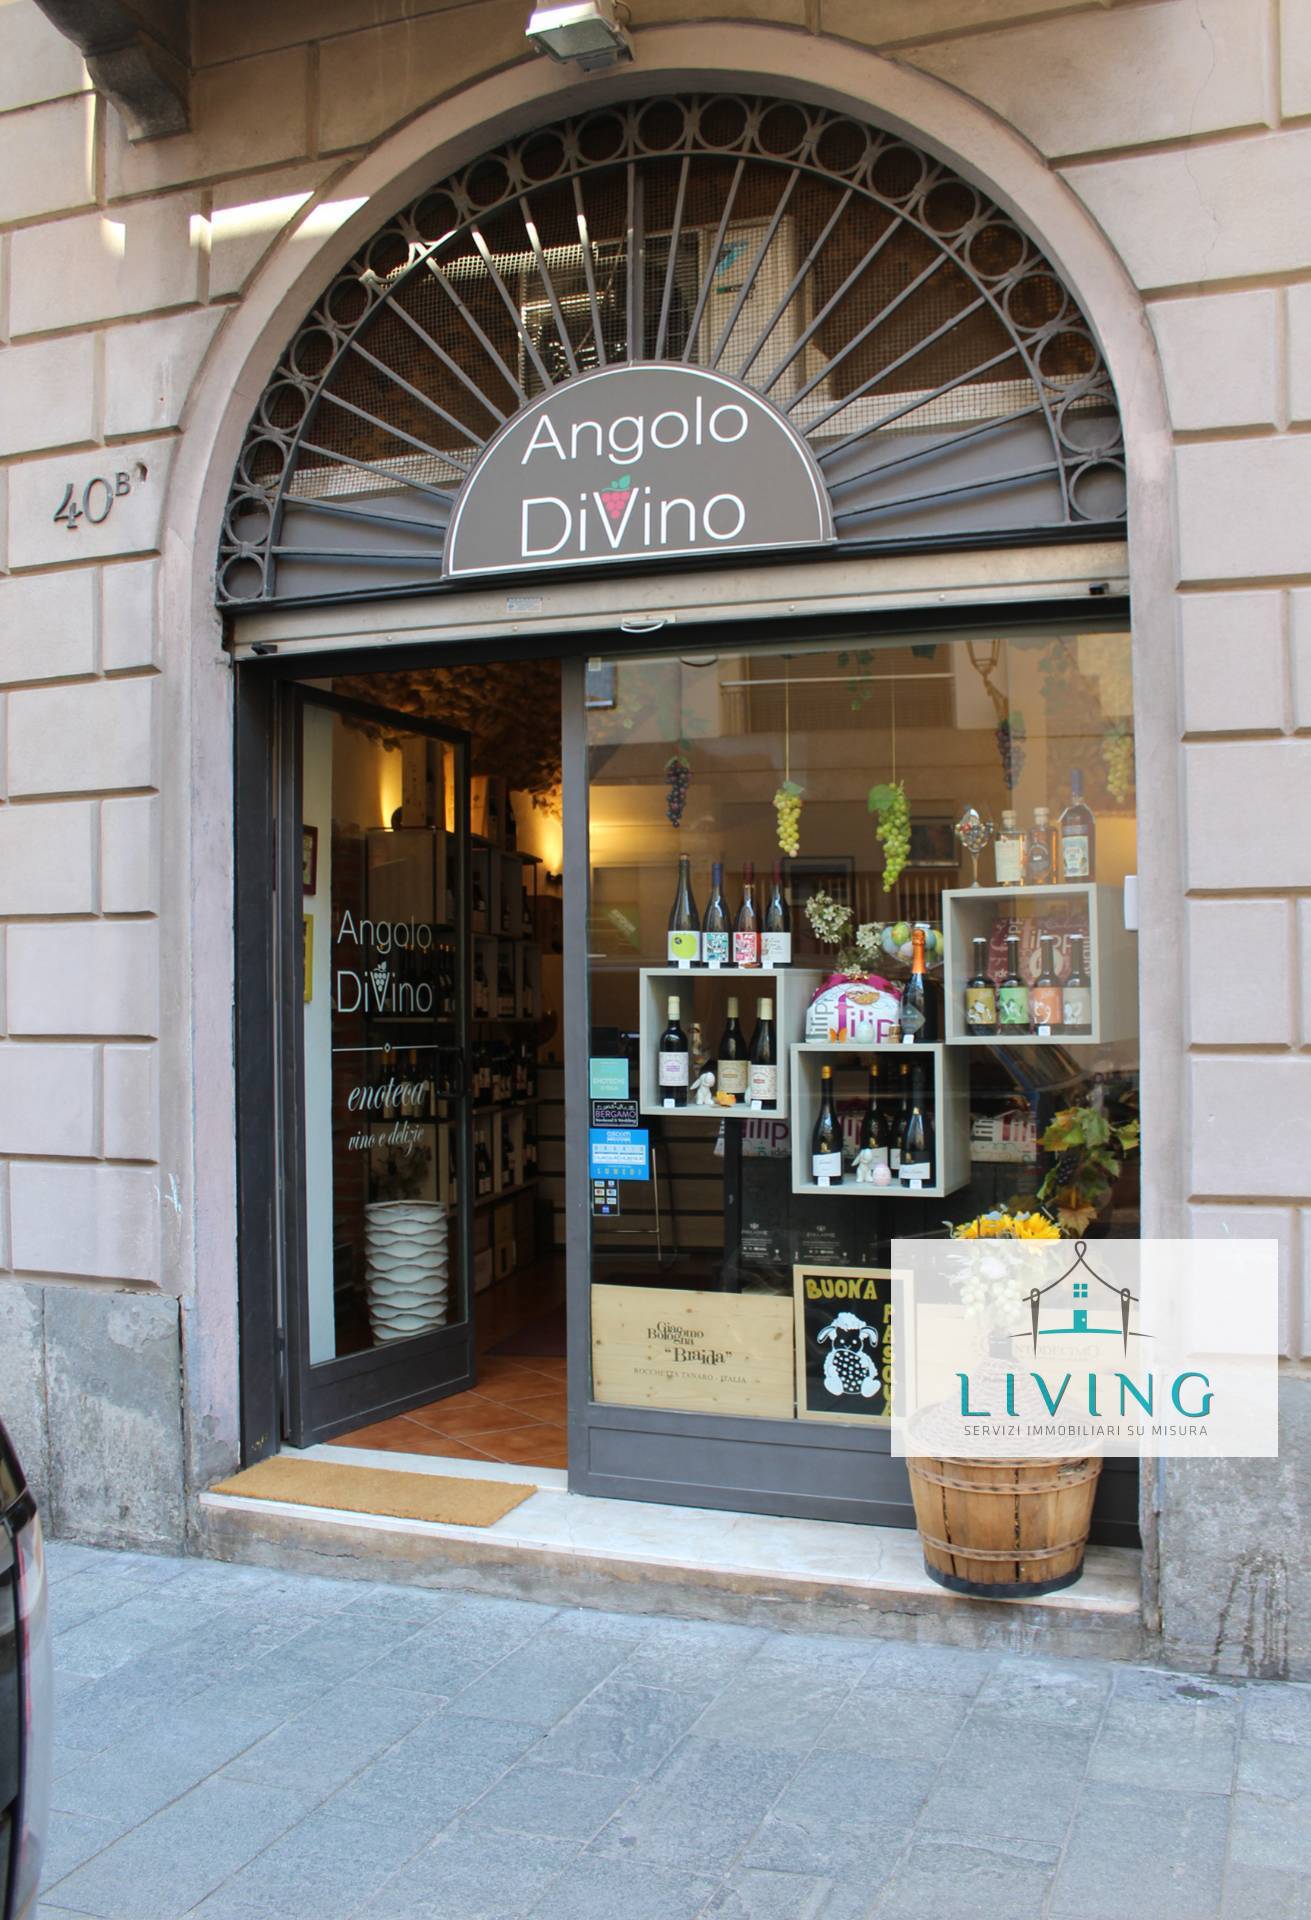 Locale commerciale in vendita, Bergamo borgo palazzo